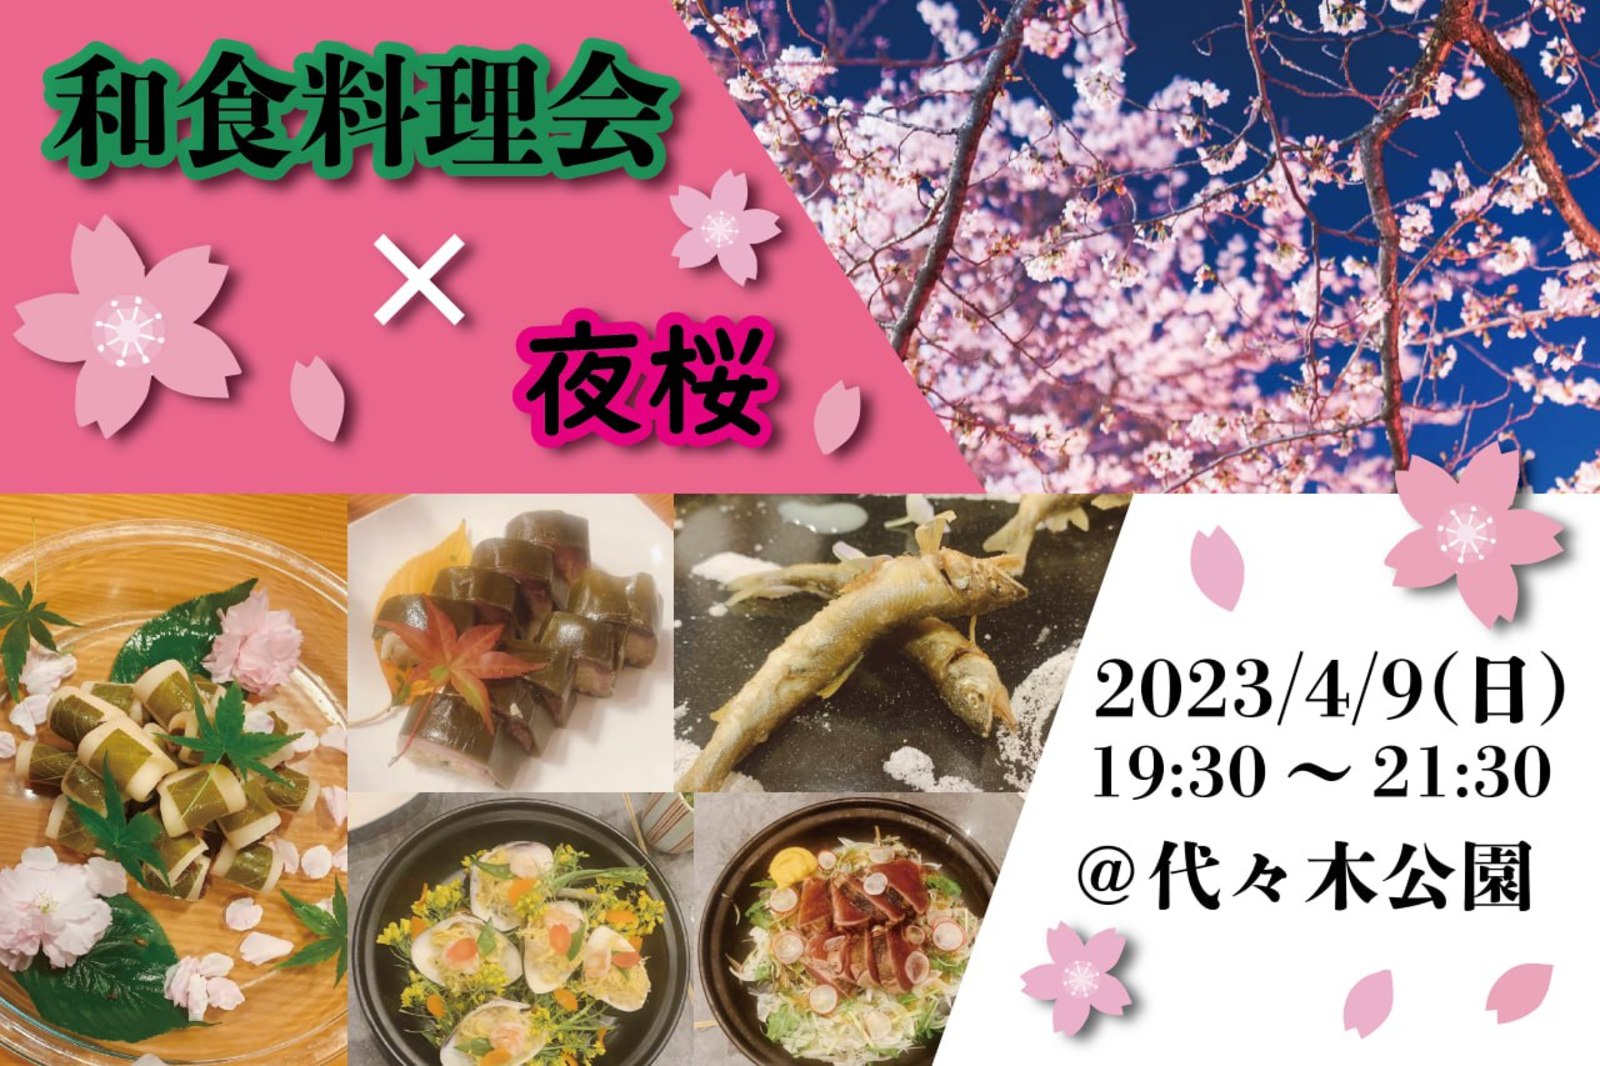 プロが作る和食弁当🍱×夜桜花見🌸